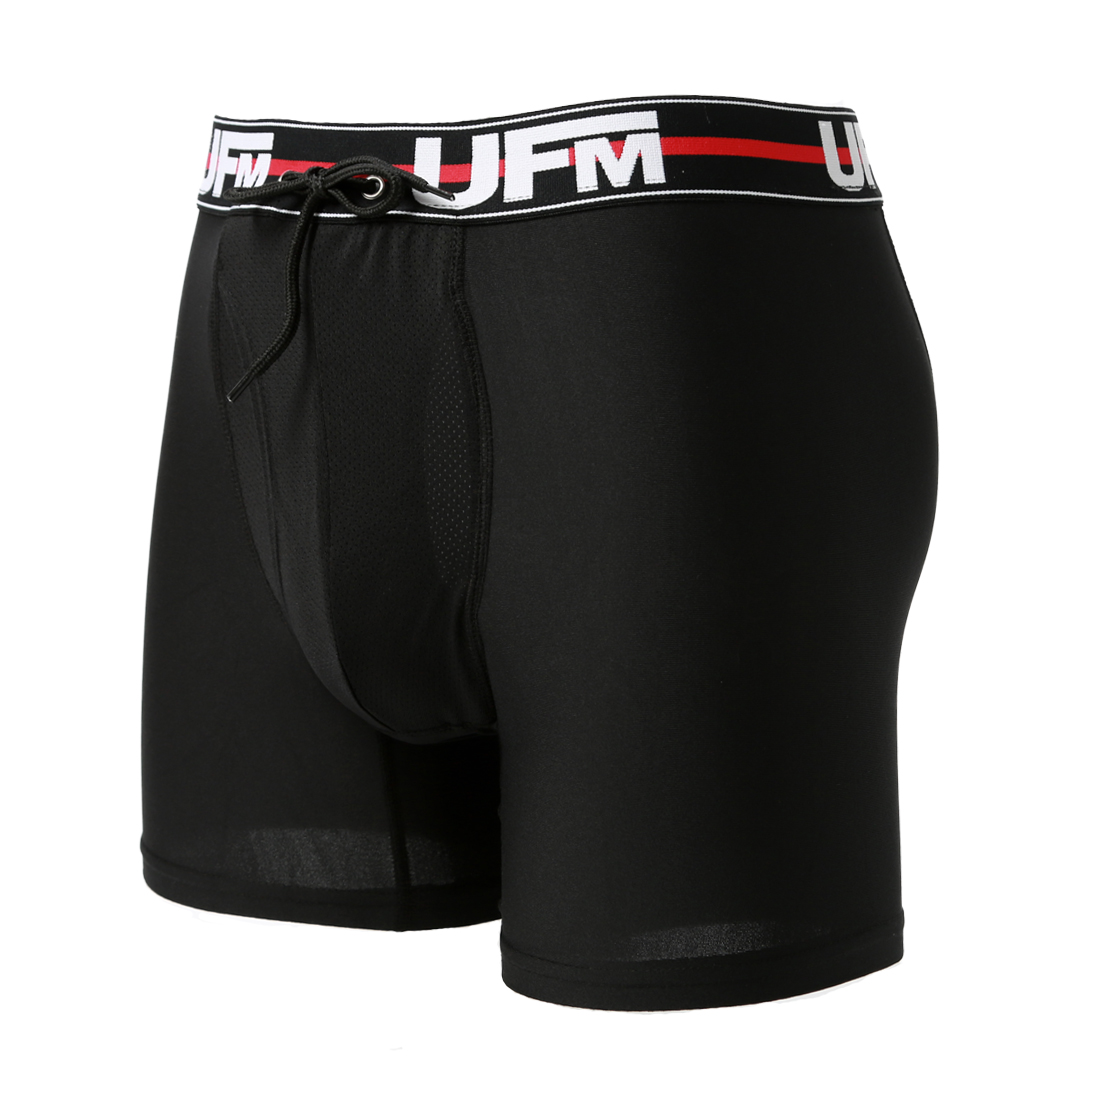 Parent UFM Underwear for Men Work Polyester 6 inch Original Max Boxer Brief Black 800